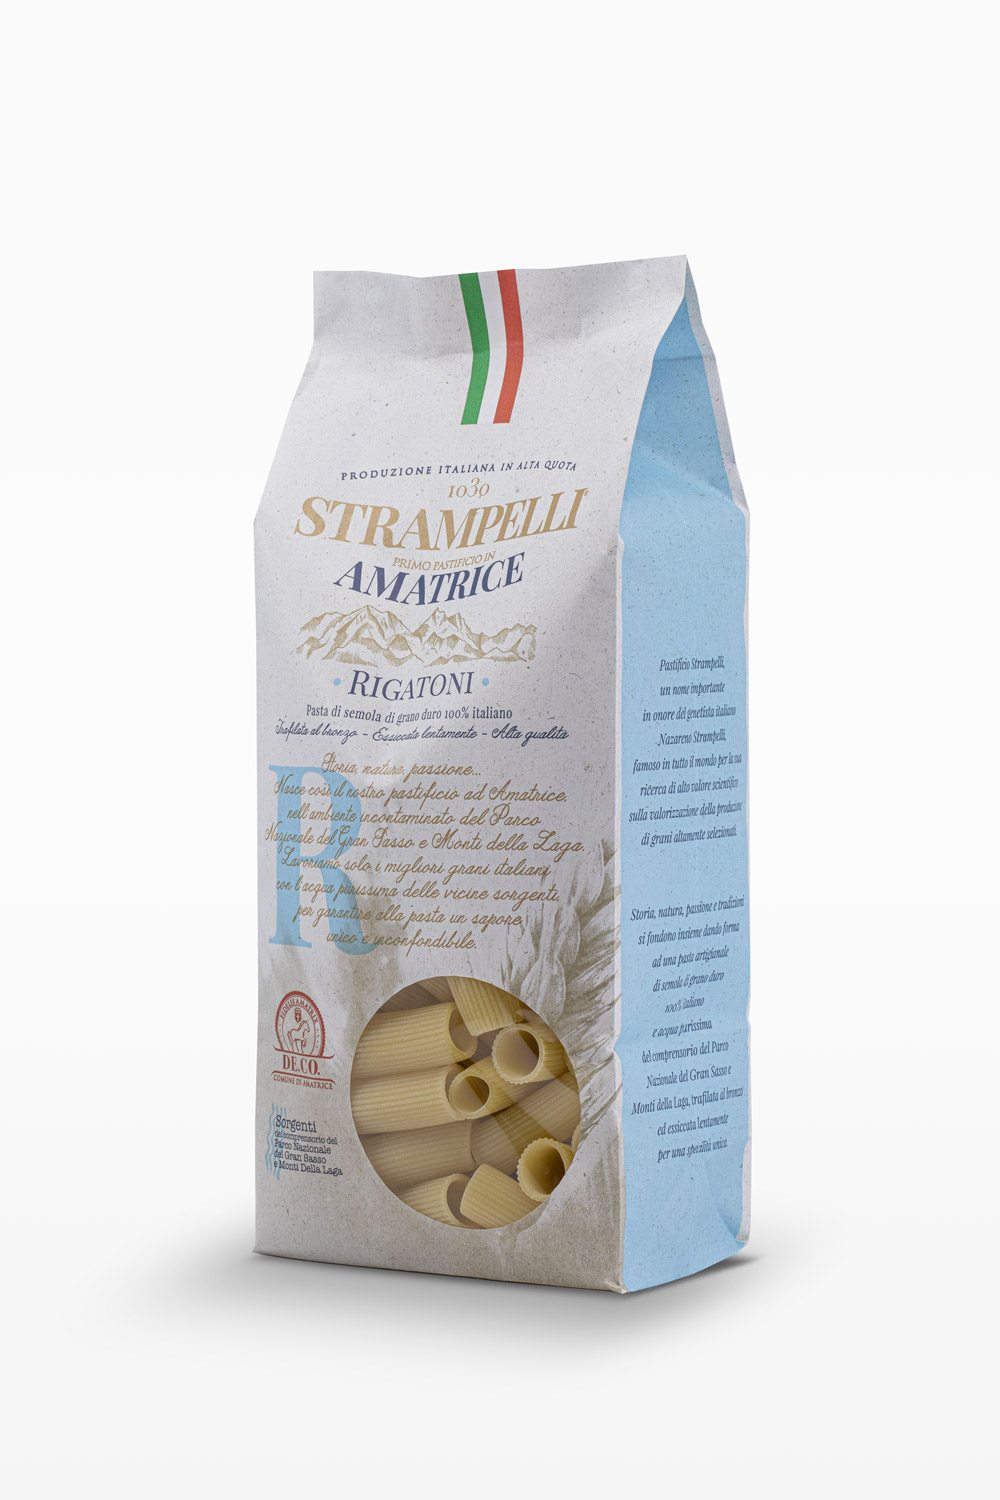 Rigatoni - Pasta di semola di grano duro, ruvida e porosa, grano 100% italiano, essiccazione lenta a bassa temperatura.